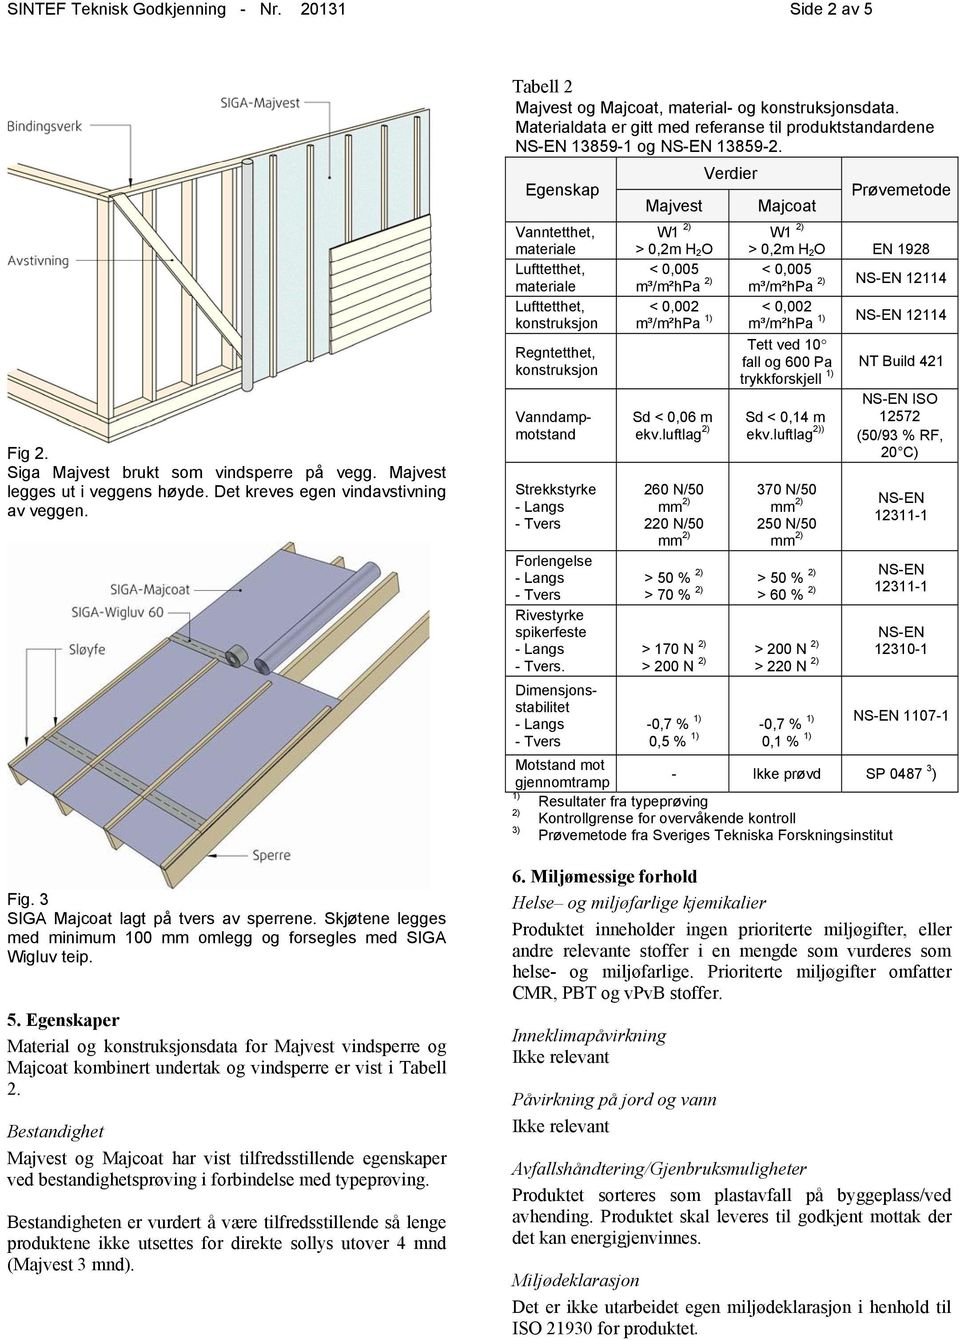 Egenskaper Material og konstruksjonsdata for Majvest vindsperre og Majcoat kombinert undertak og vindsperre er vist i Tabell 2.